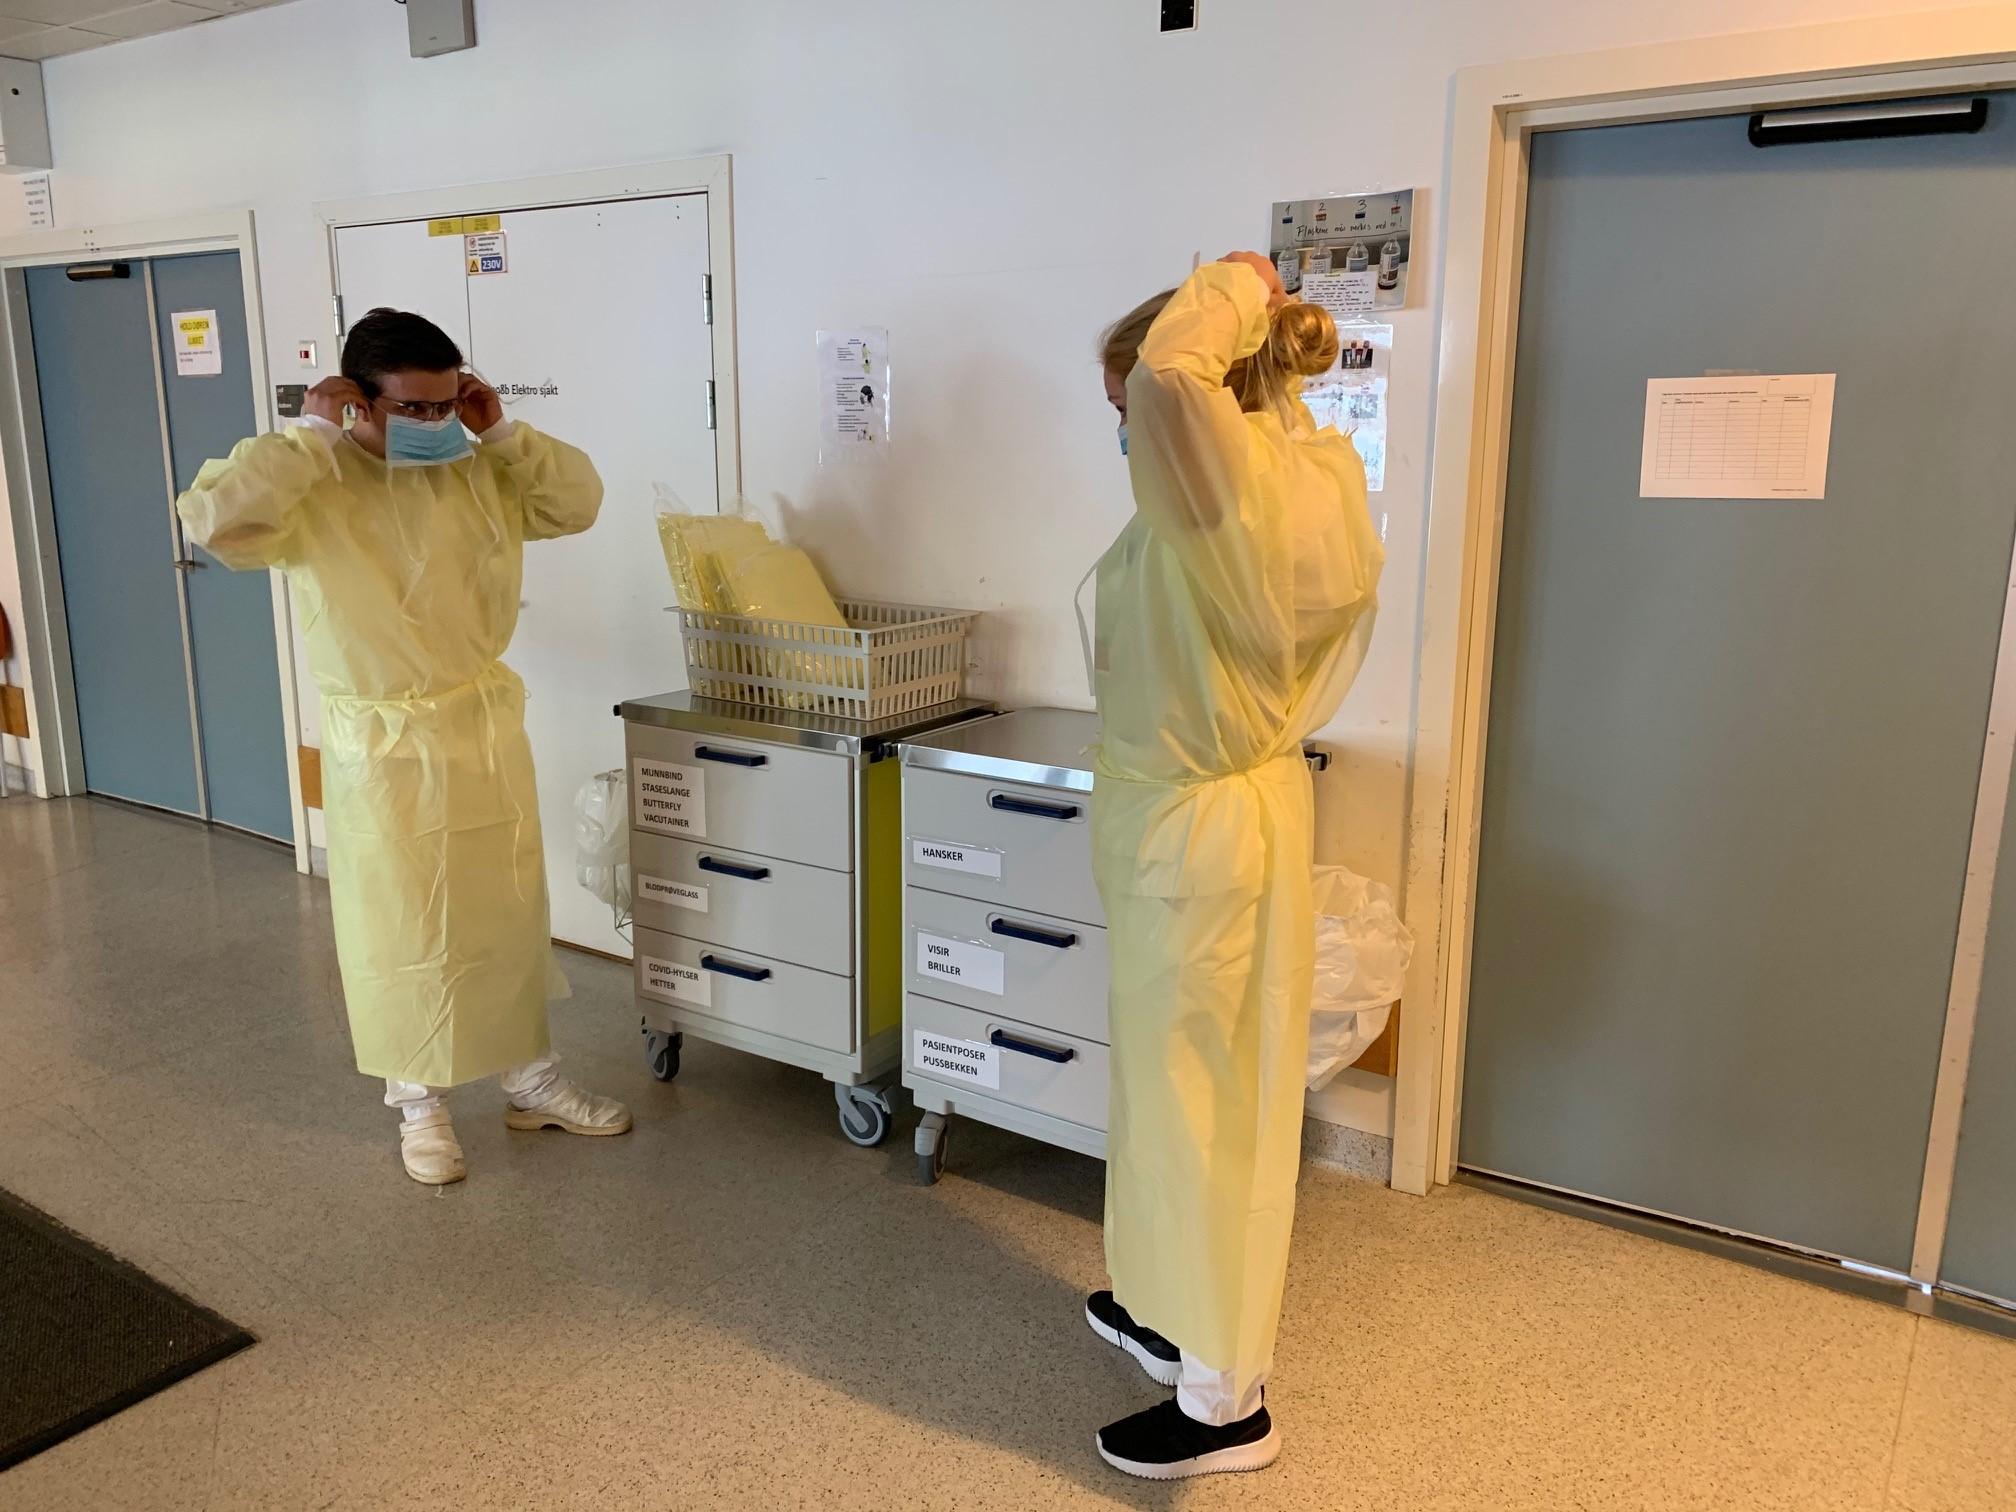 Sykehusene Bærum og Drammen sykehus i Vestre Viken har selv tatt bilder fra innsiden av sykehusene som viser personale i lysegule drakter og lange, lilla hansker, og strenge soneinndelinger i behandlingen av korona smittede pasienter. Bildet er tatt i april. 